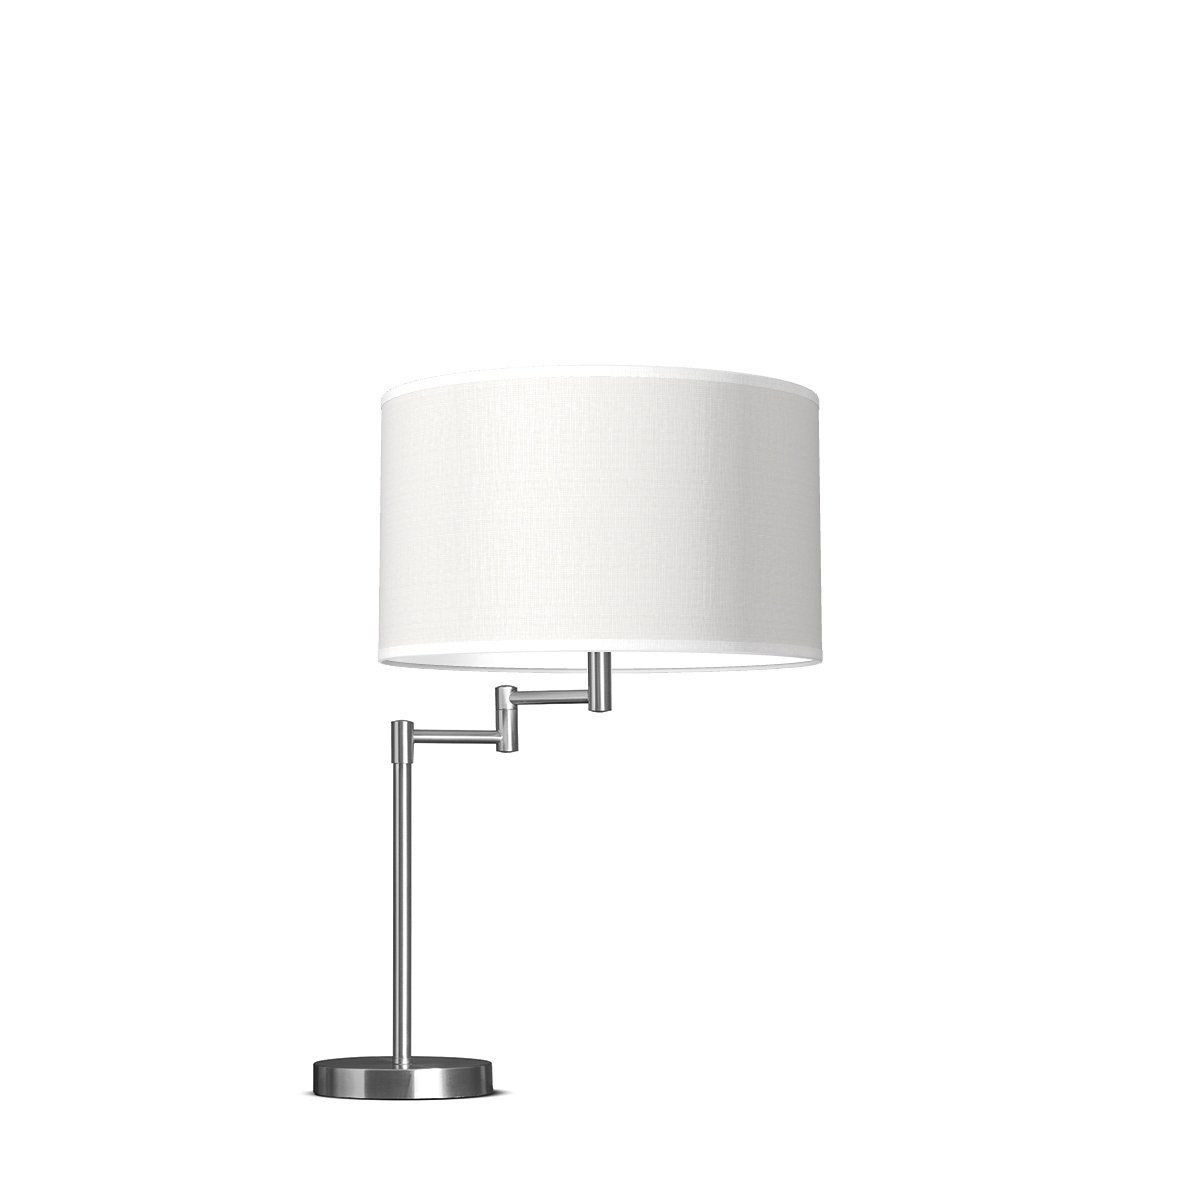 Light depot - tafellamp swing bling Ø 35 cm - wit - Outlet